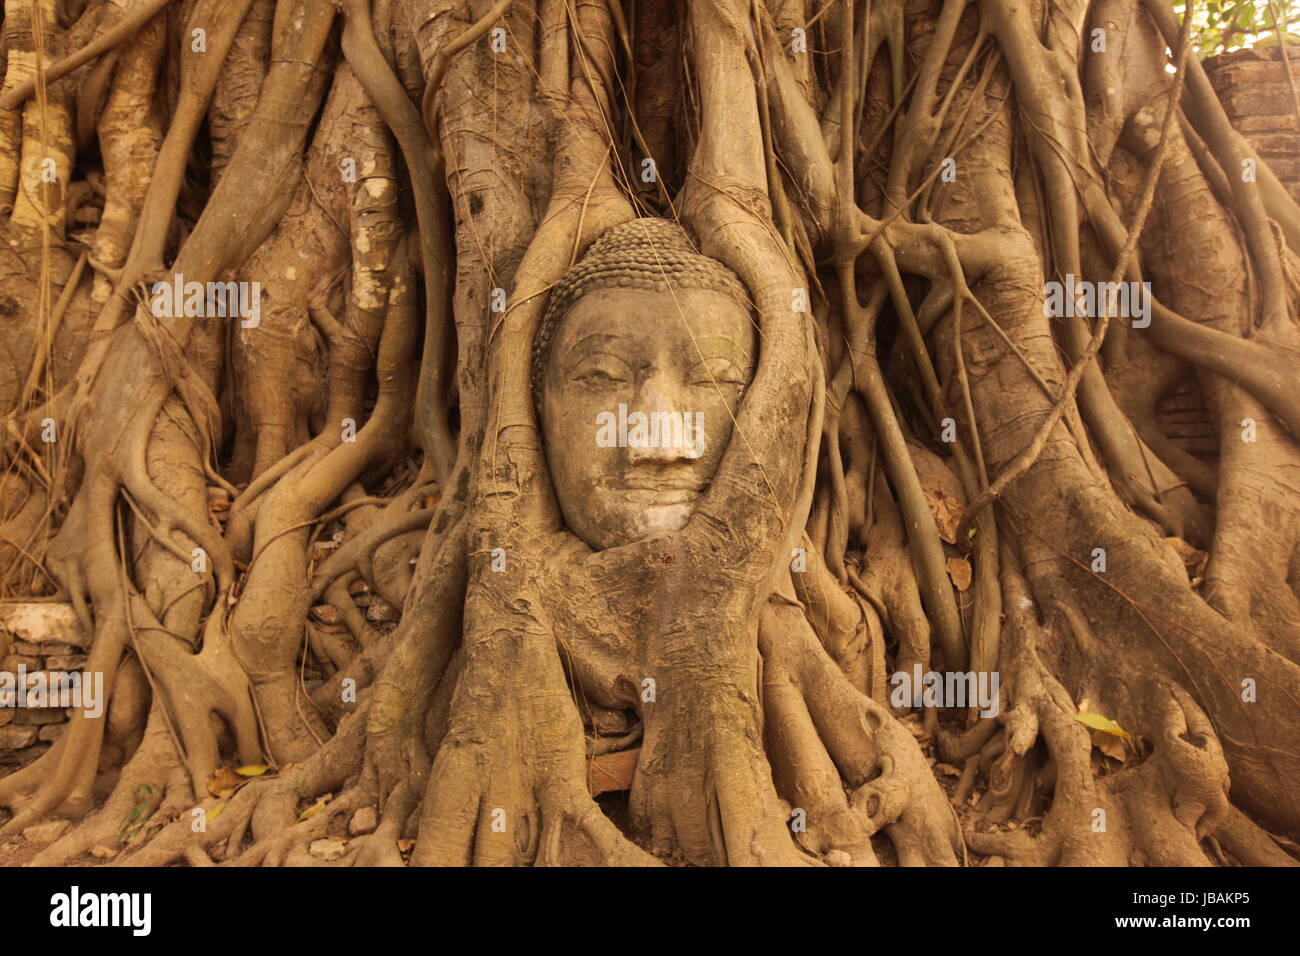 Ein in einem Baum eingeflechteter Steinkopf im Wat Phra Mahathat Tempel in der Tempelstadt Ayutthaya noerdlich von Bangkok in Thailand Stock Photo